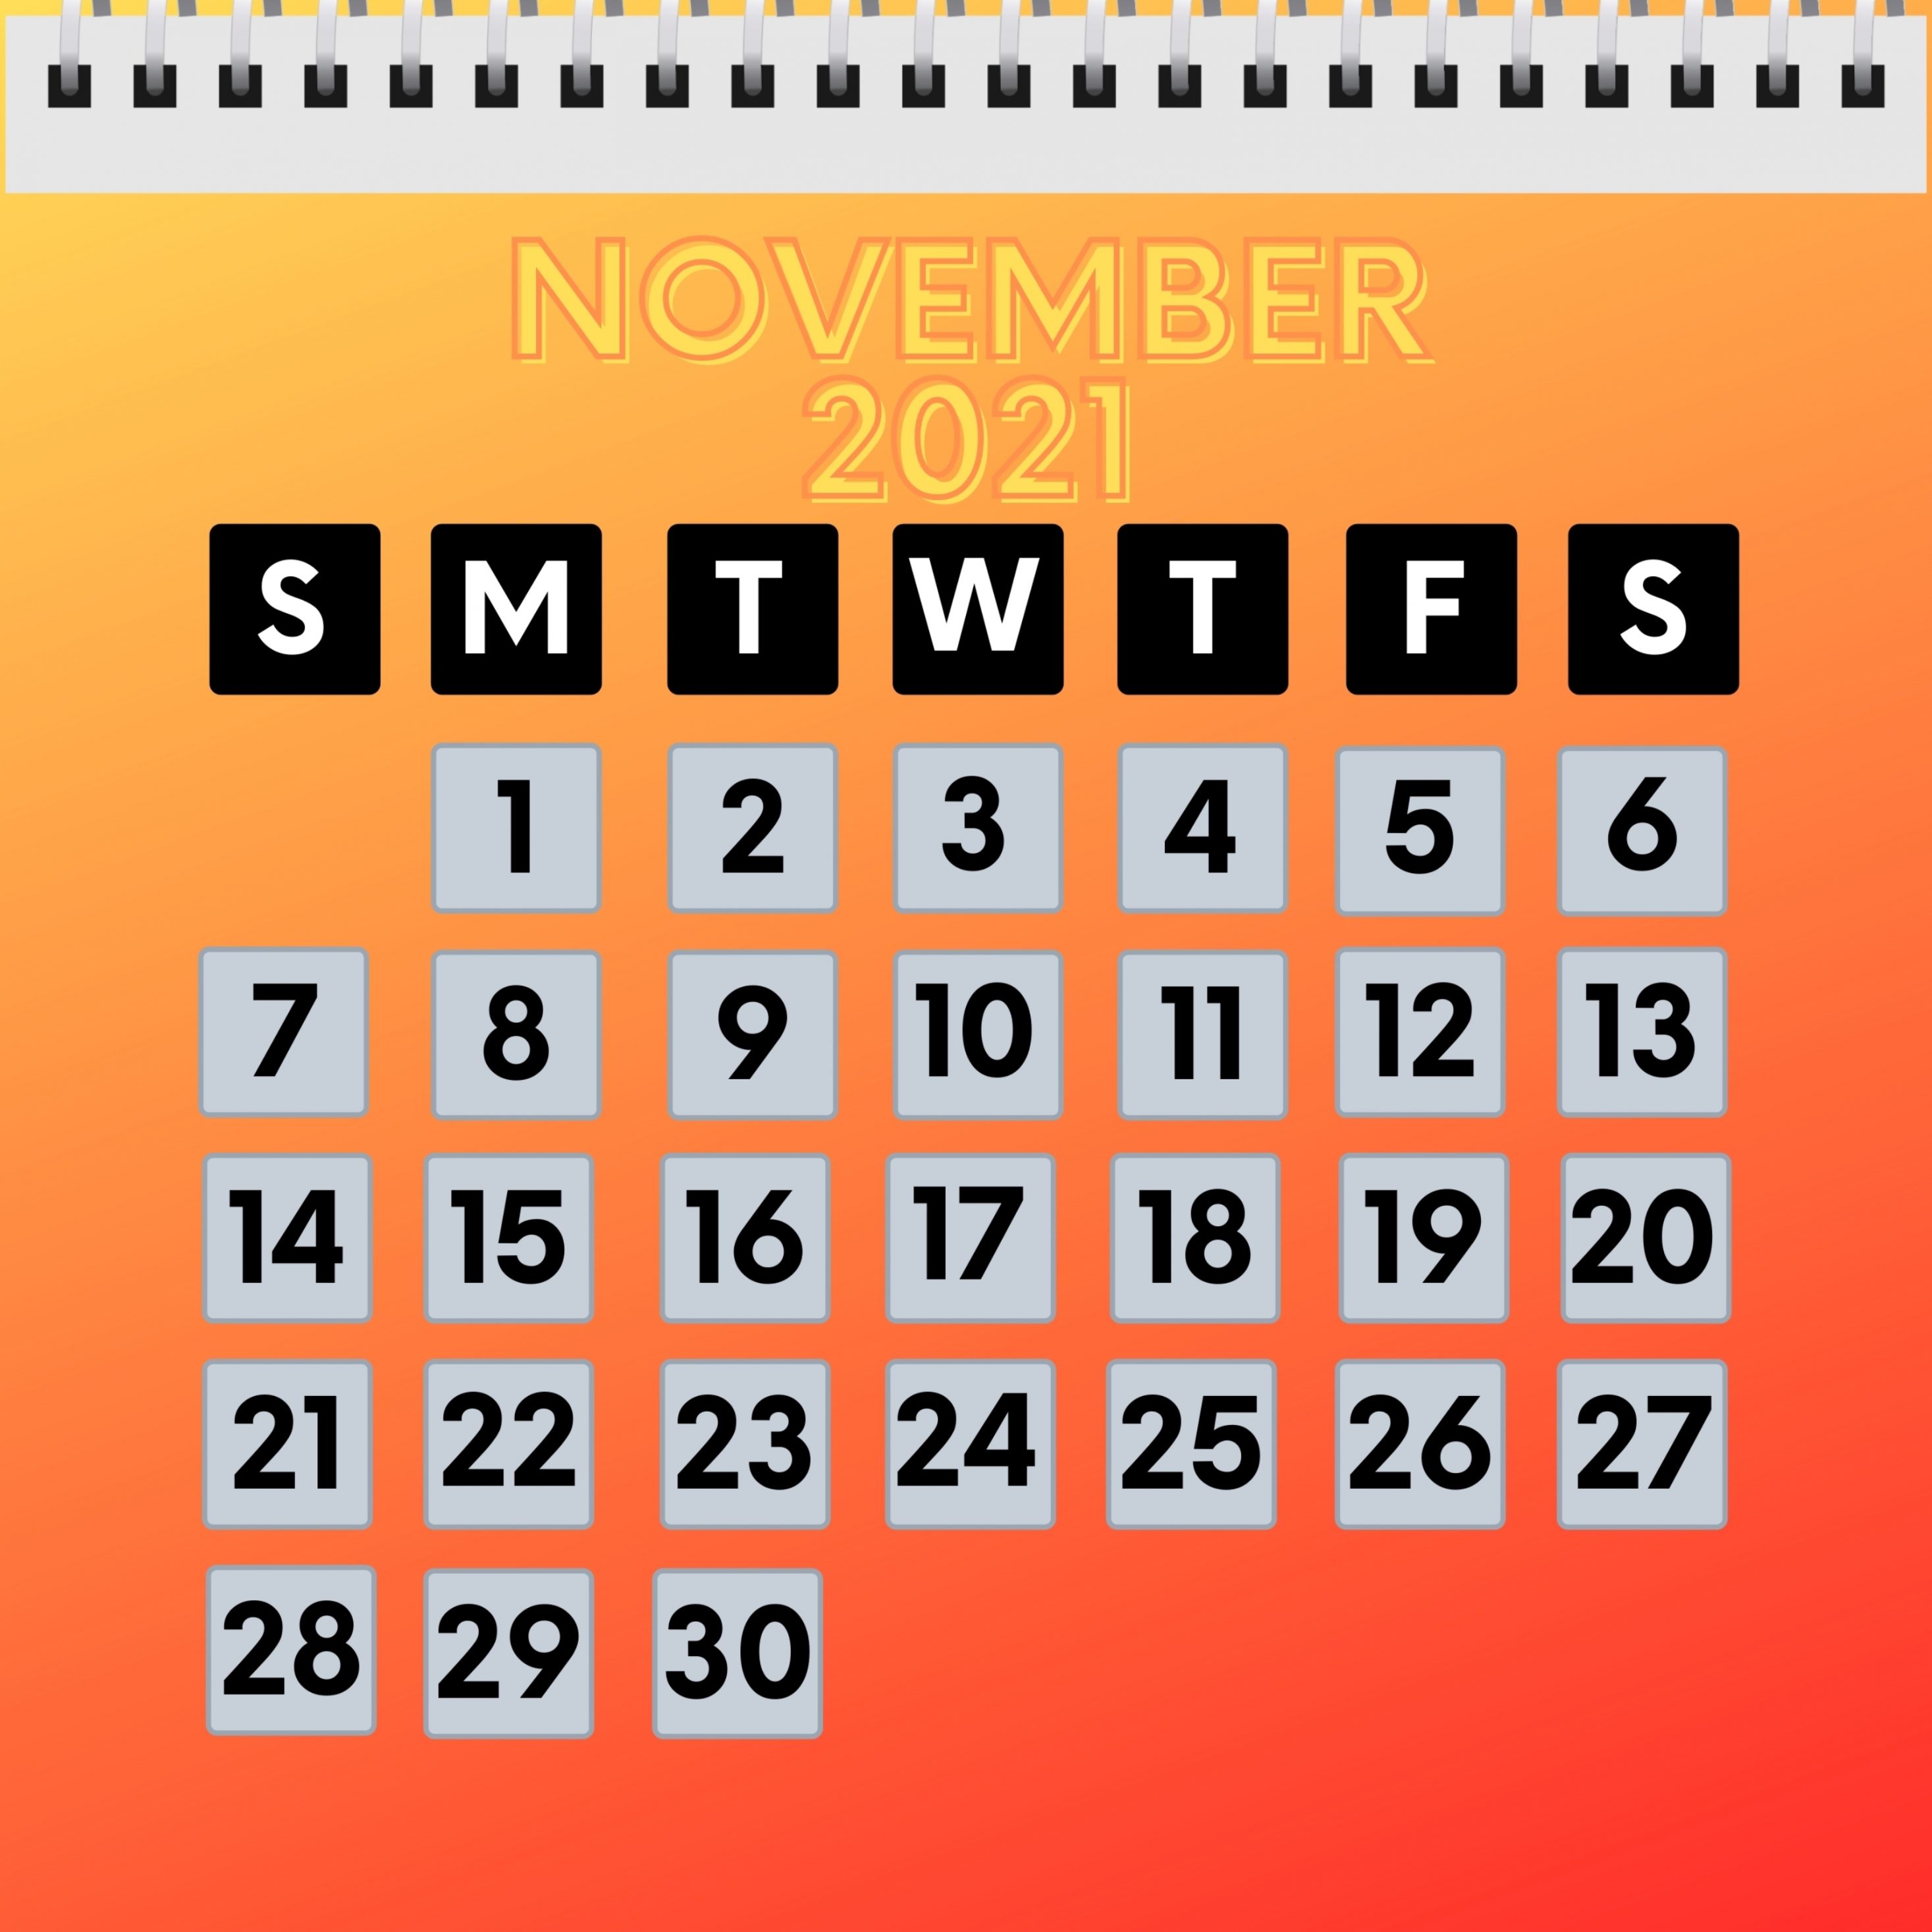 2934x2934 iOS iPad wallpaper 4k November 2021 Calendar iPad Wallpaper 2934x2934 pixels resolution